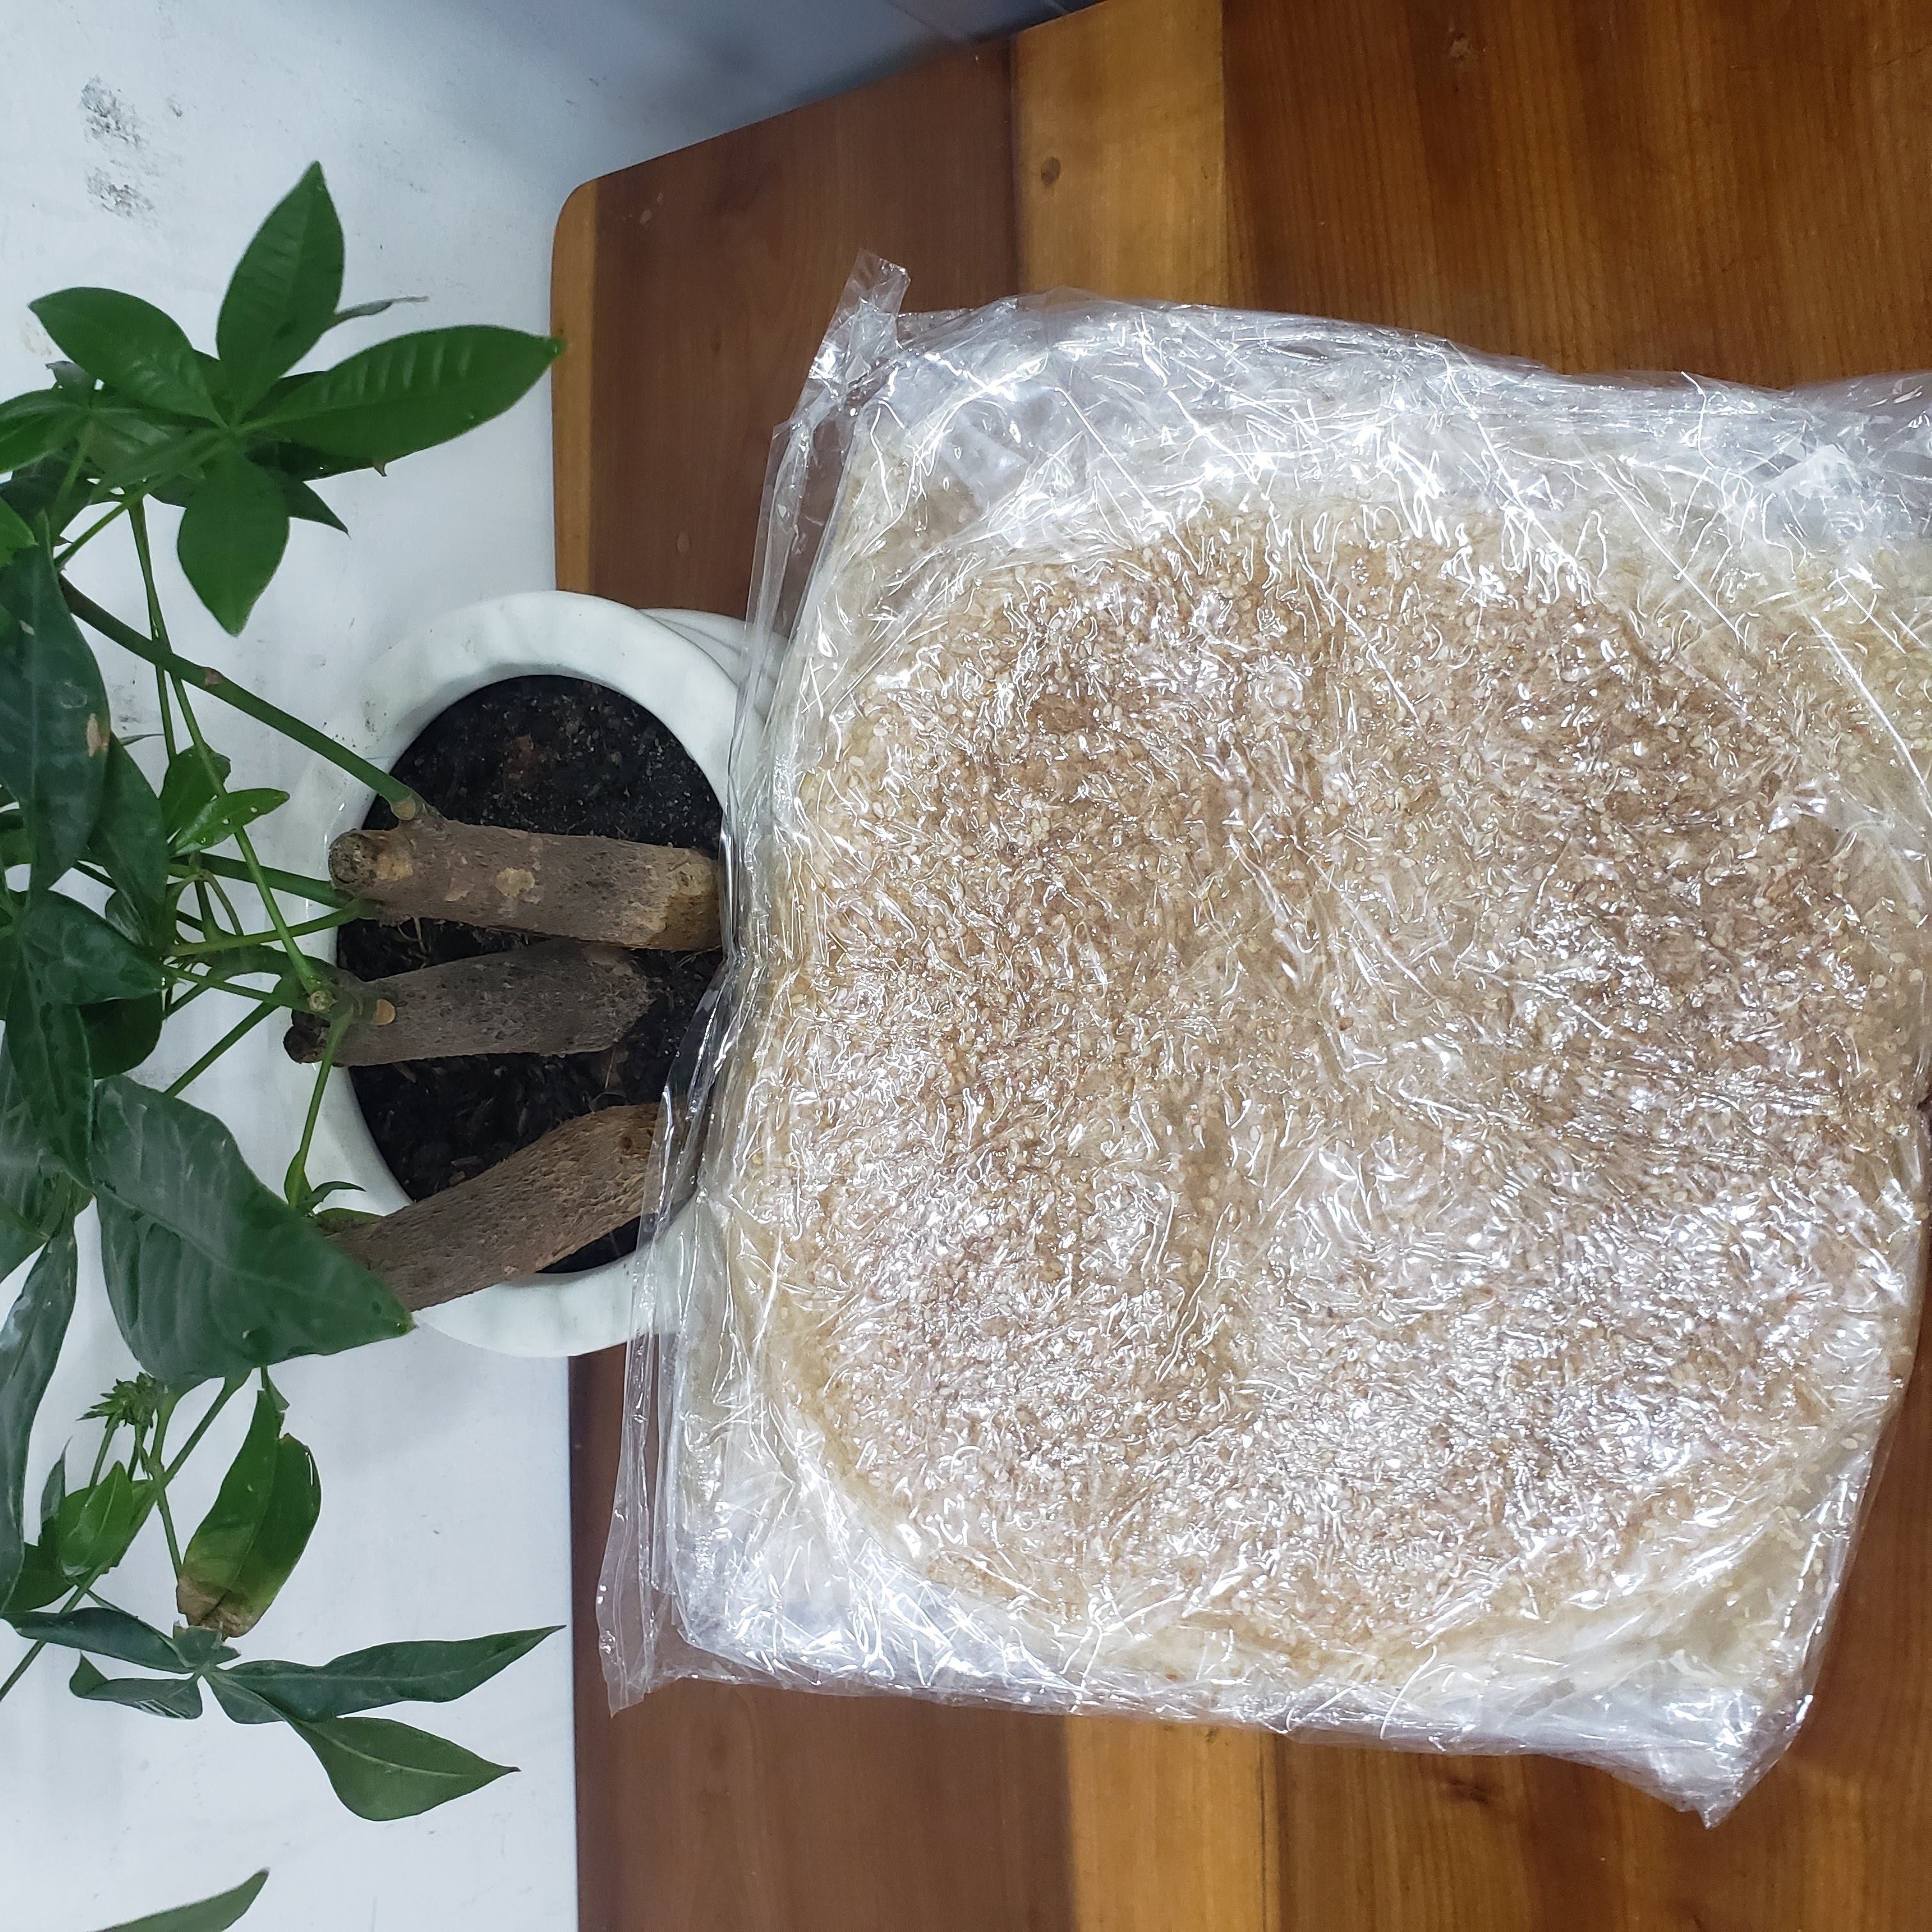 Đặc Sản Nha Trang-Bánh Tráng Cuốn Không Nhúng Nước Mè Gừng Dẻo Ngọt Loại Dày, Seavy Combo 3 Gói 250 Gram